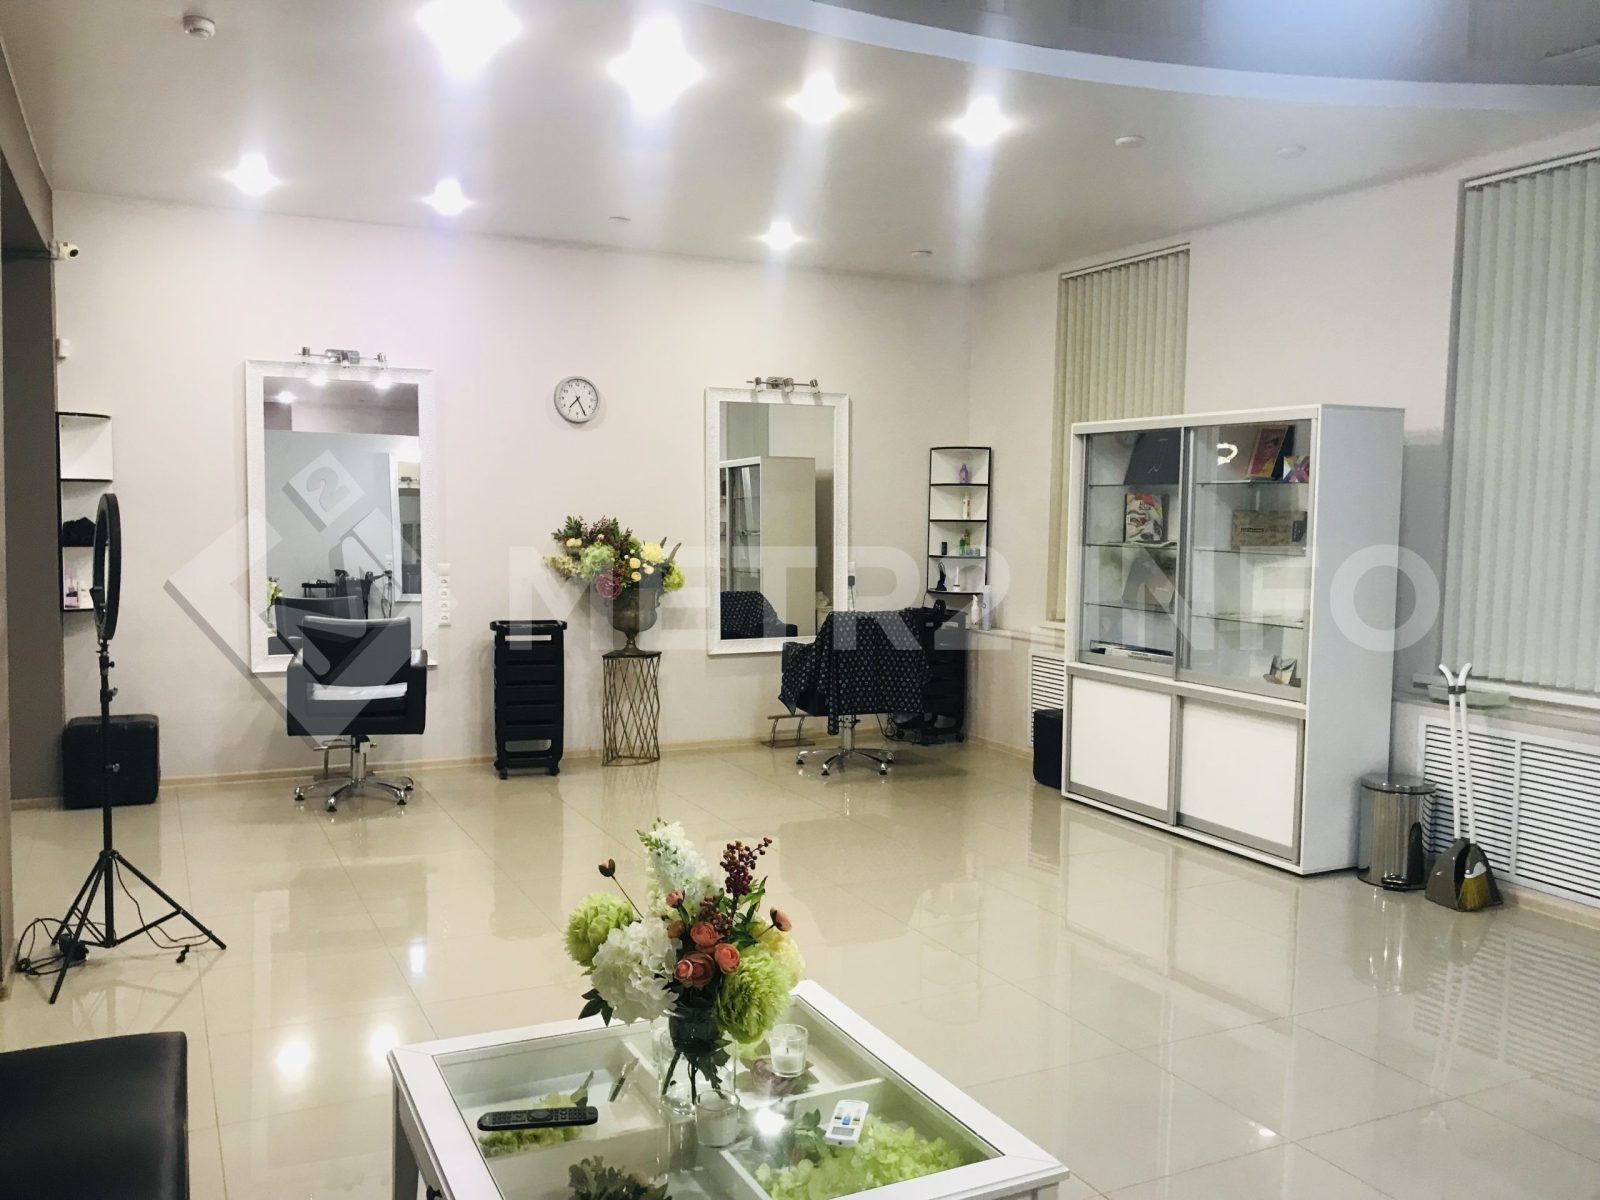 Предлагаем к продаже действующий бизнес- салона красоты «Николь» в г.Армавире, напрямую от собственника._4